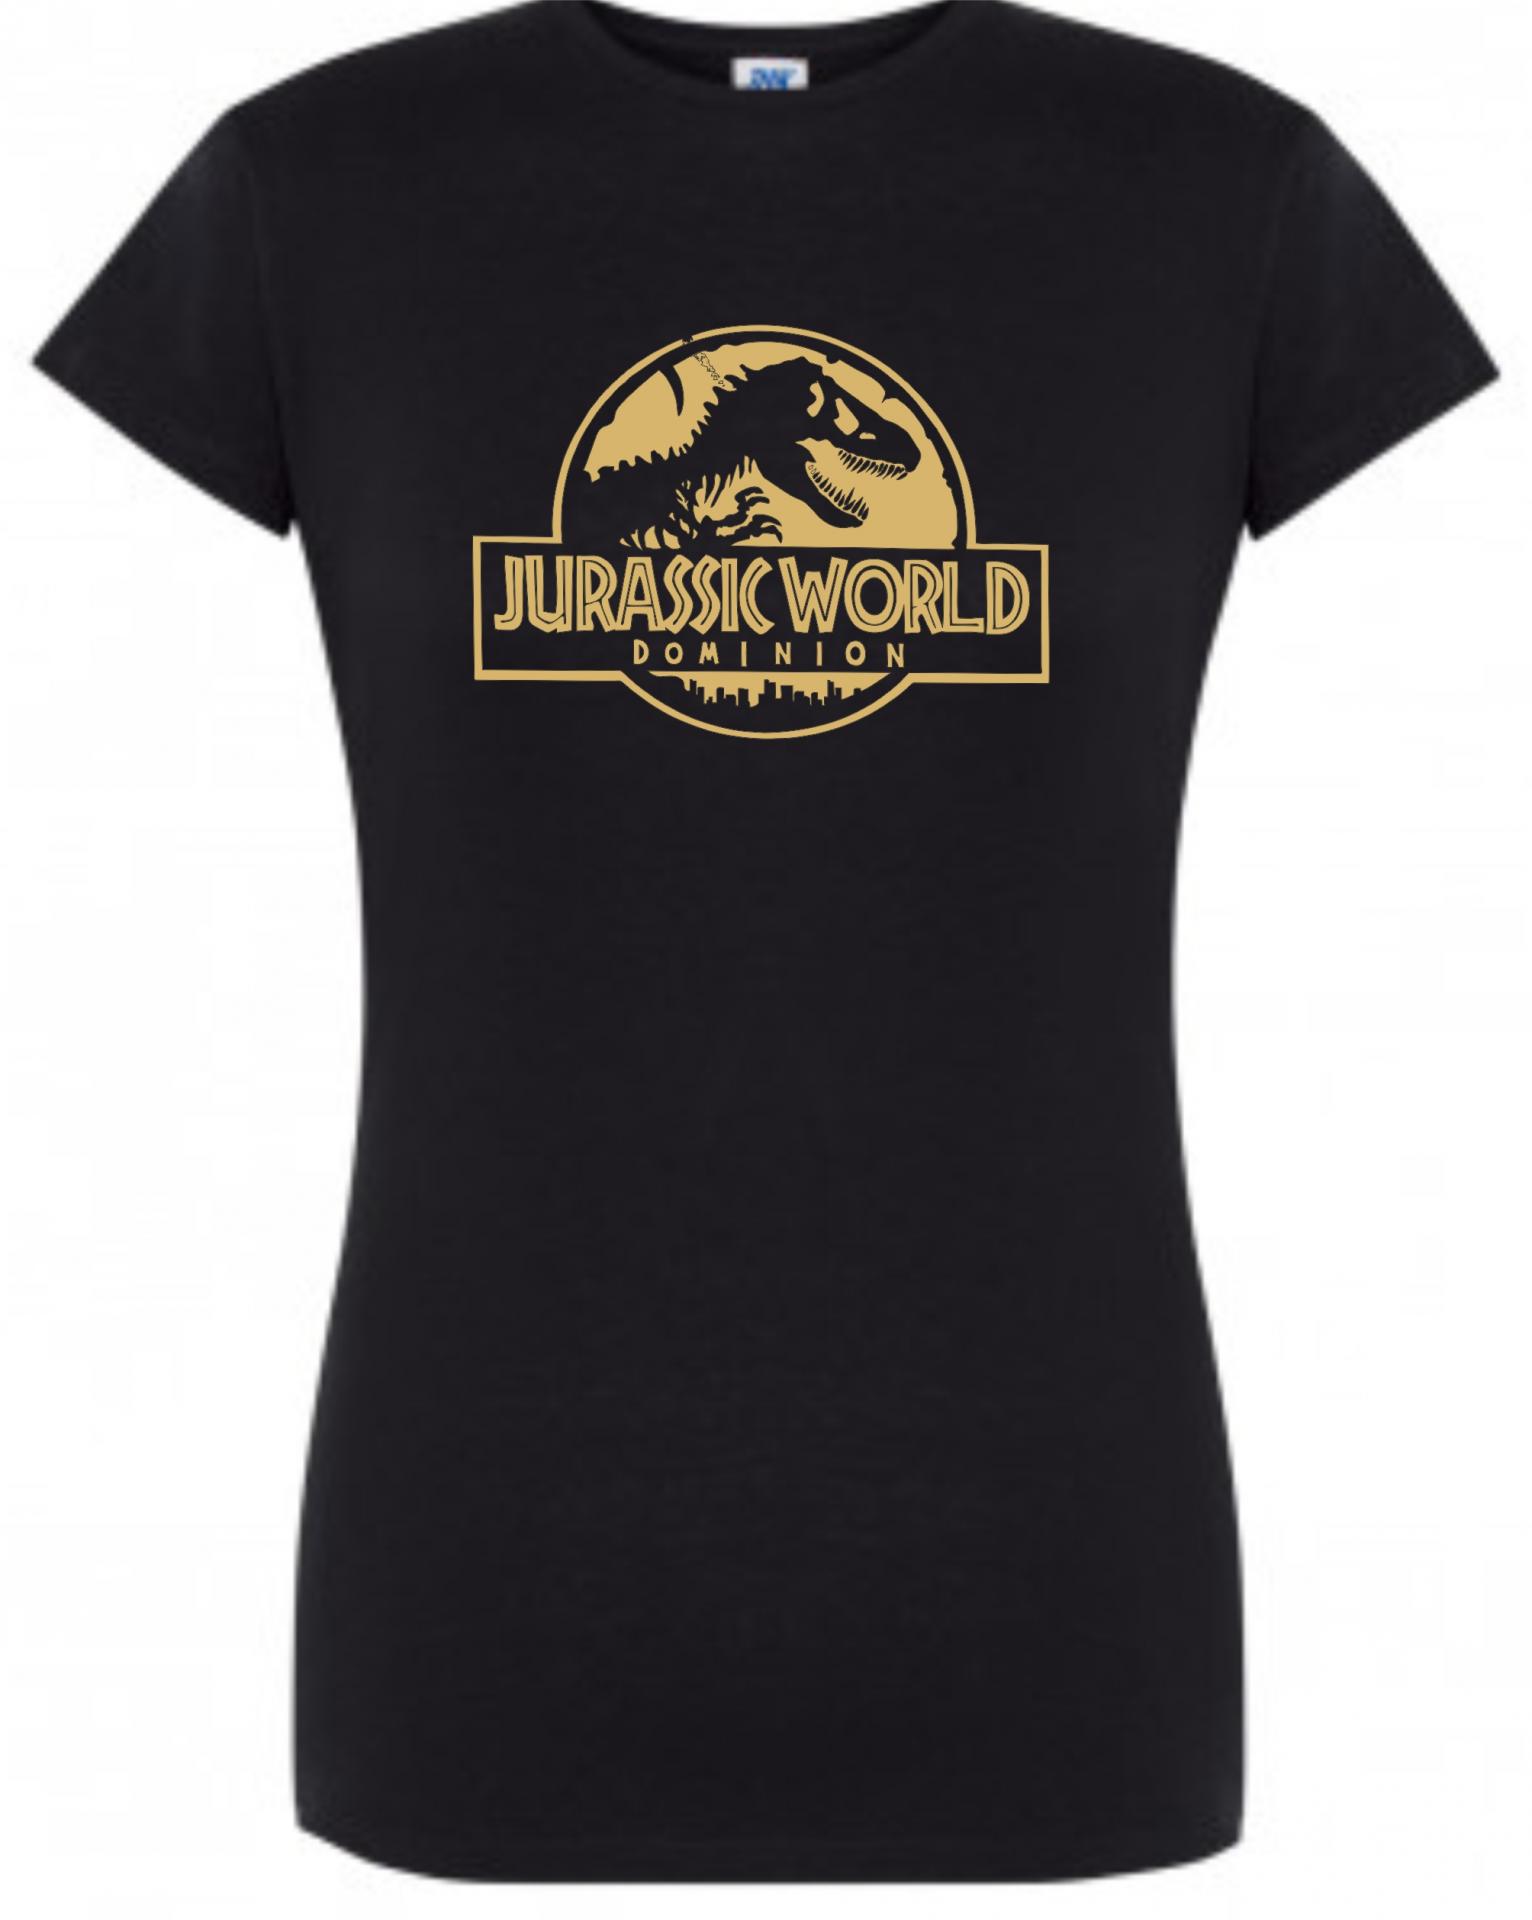 Camiseta de chica Jurassic World dominion